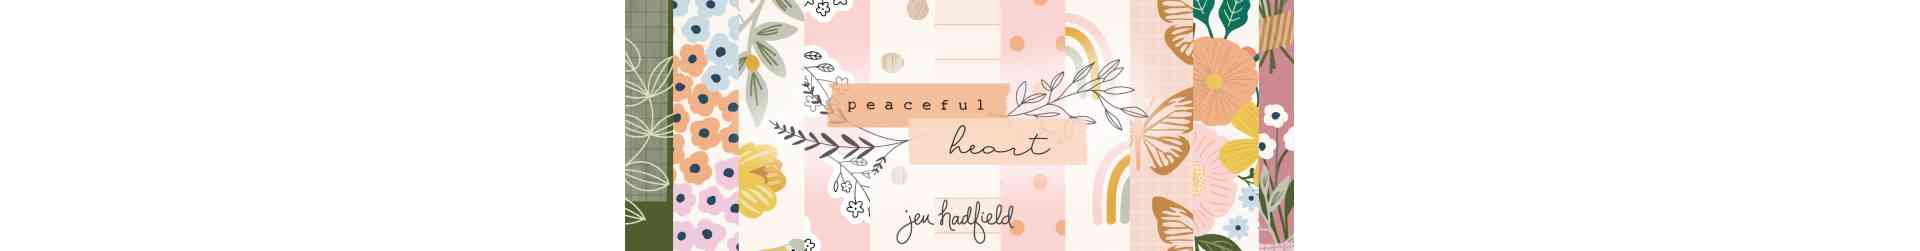 Peaceful Heart - Jen Hadfield